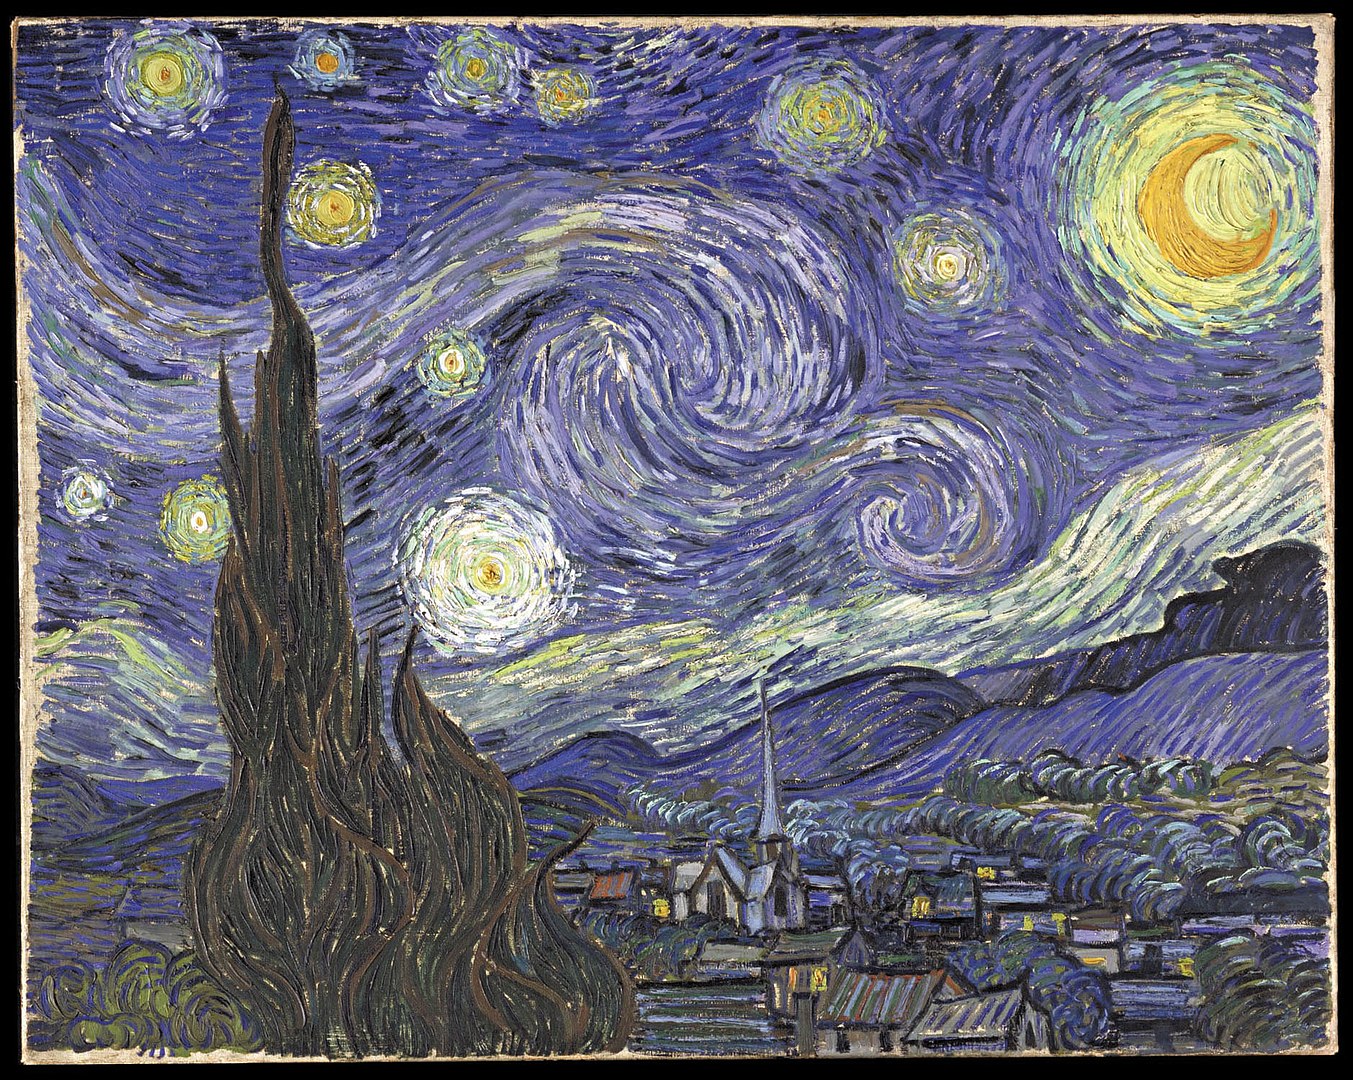 Soixante ans après sa mort, le retour de Van Gogh à la lumière du Midi